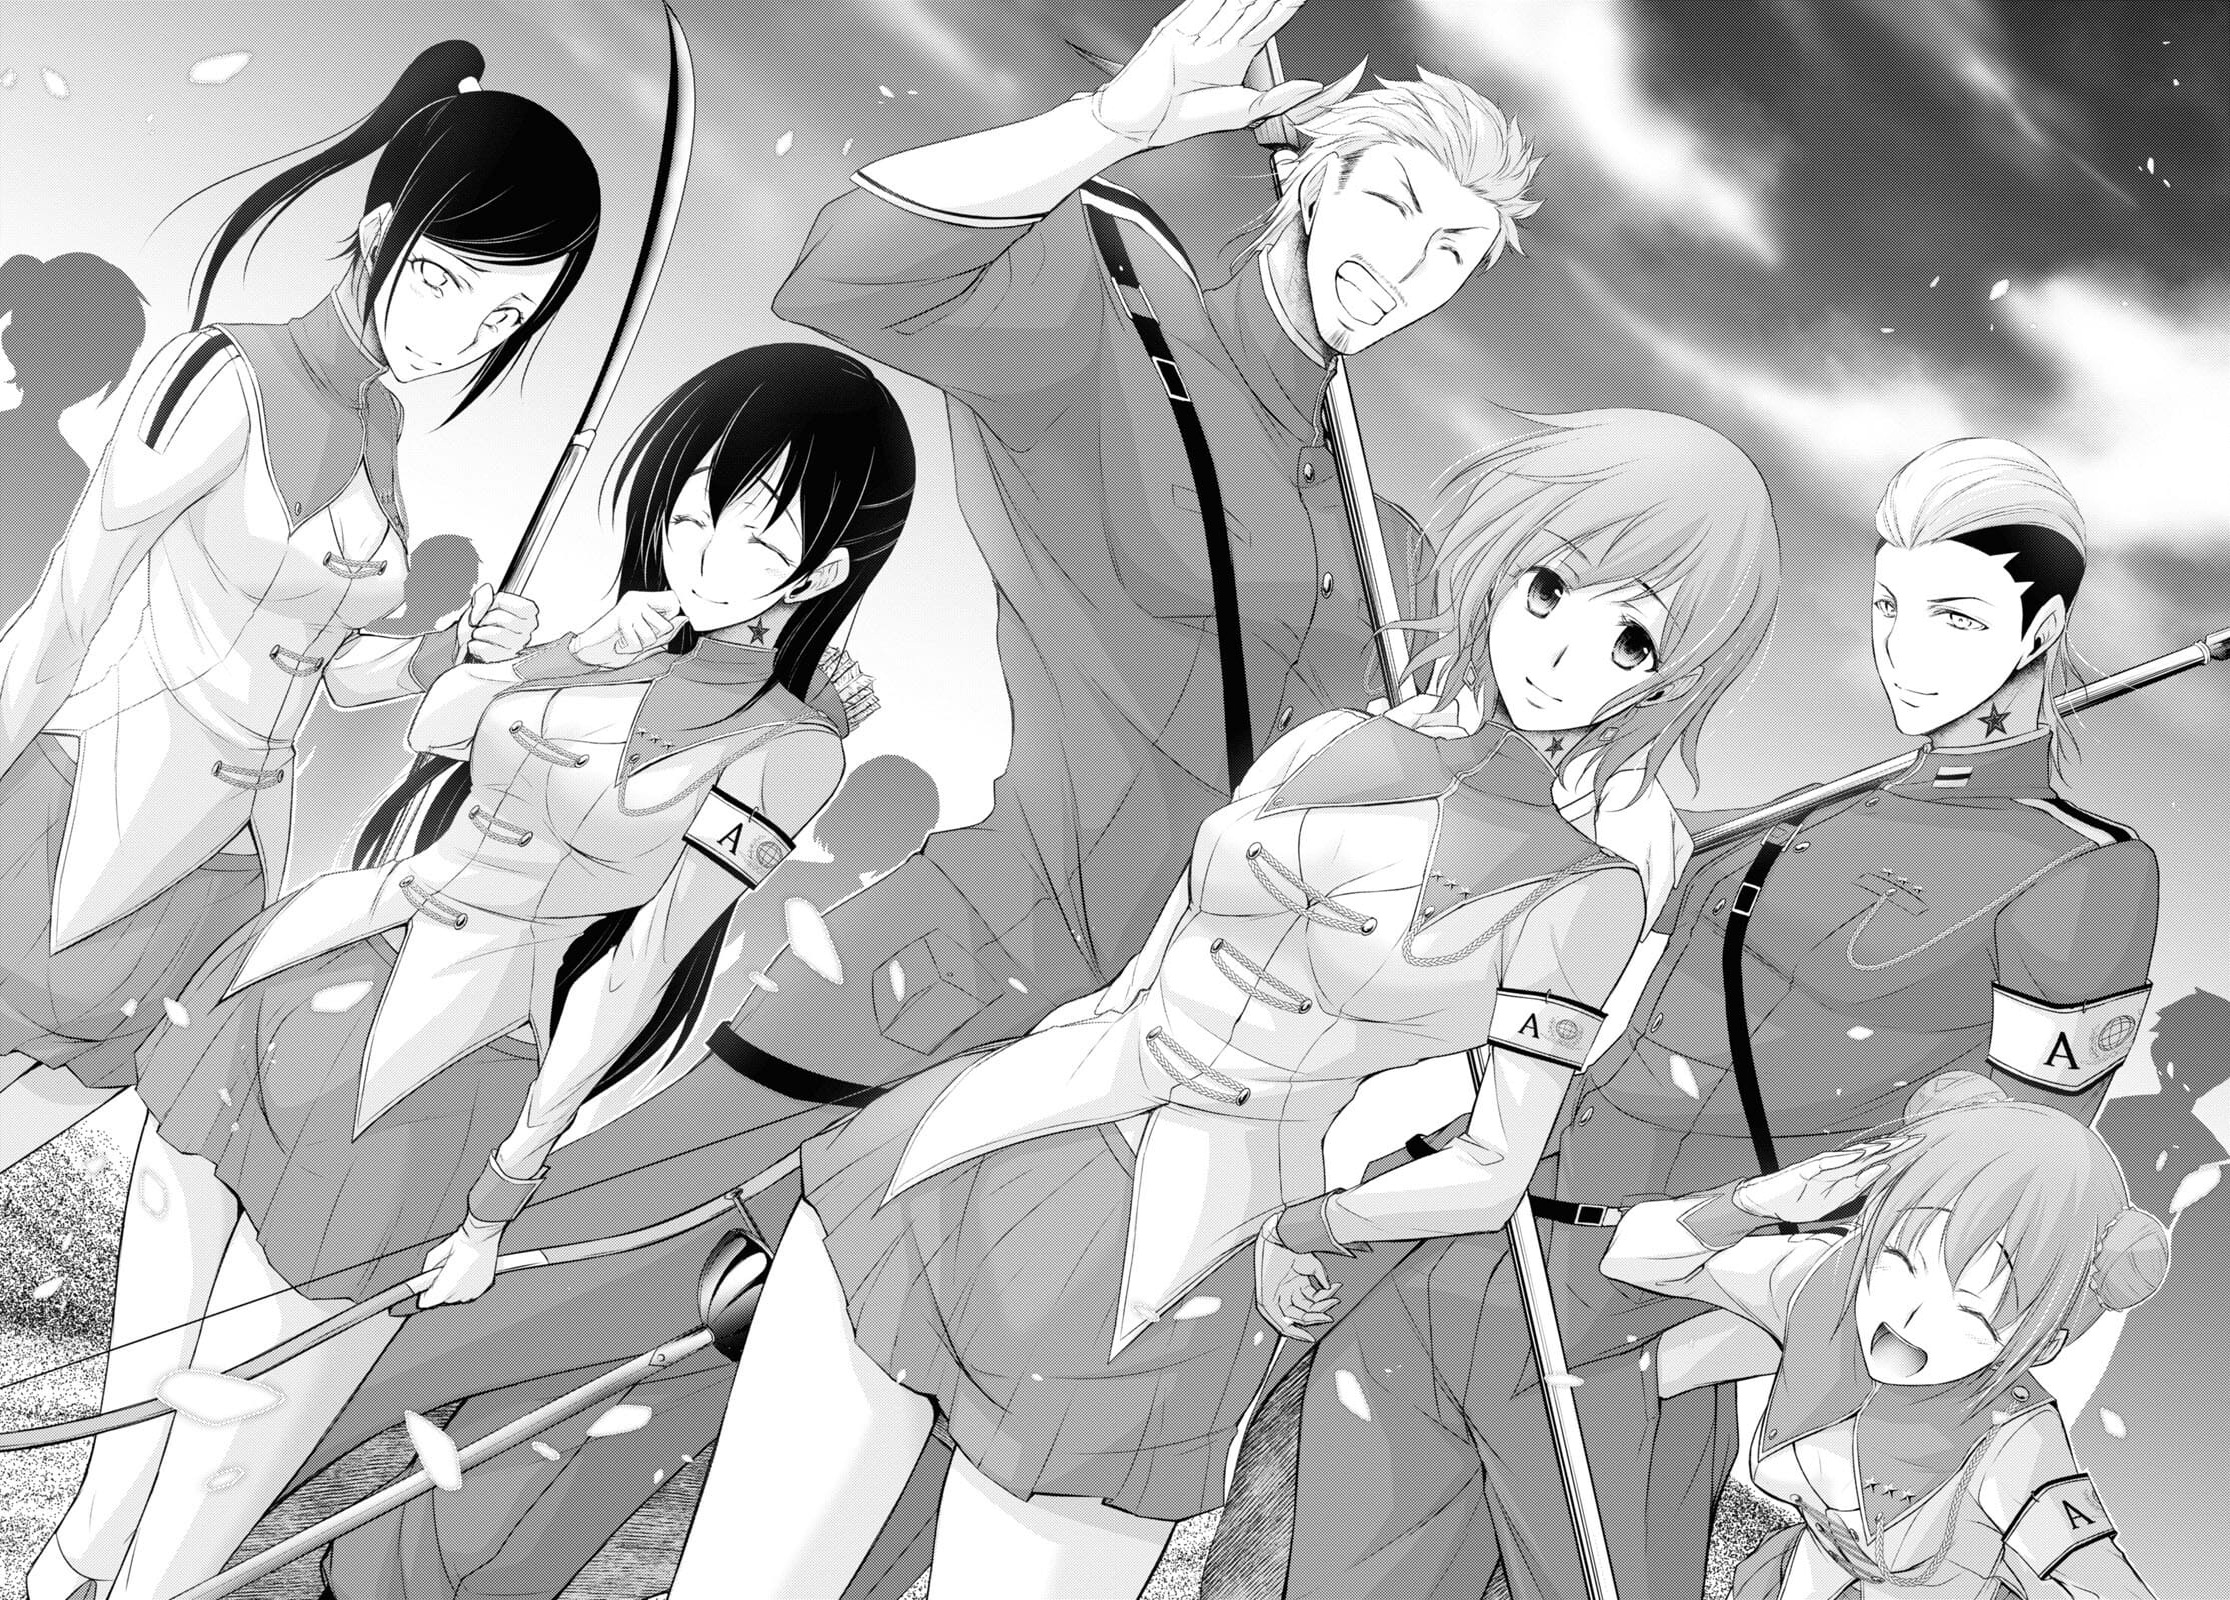 Plunderer Anime Runs for 24 Episodes - News - Anime News Network